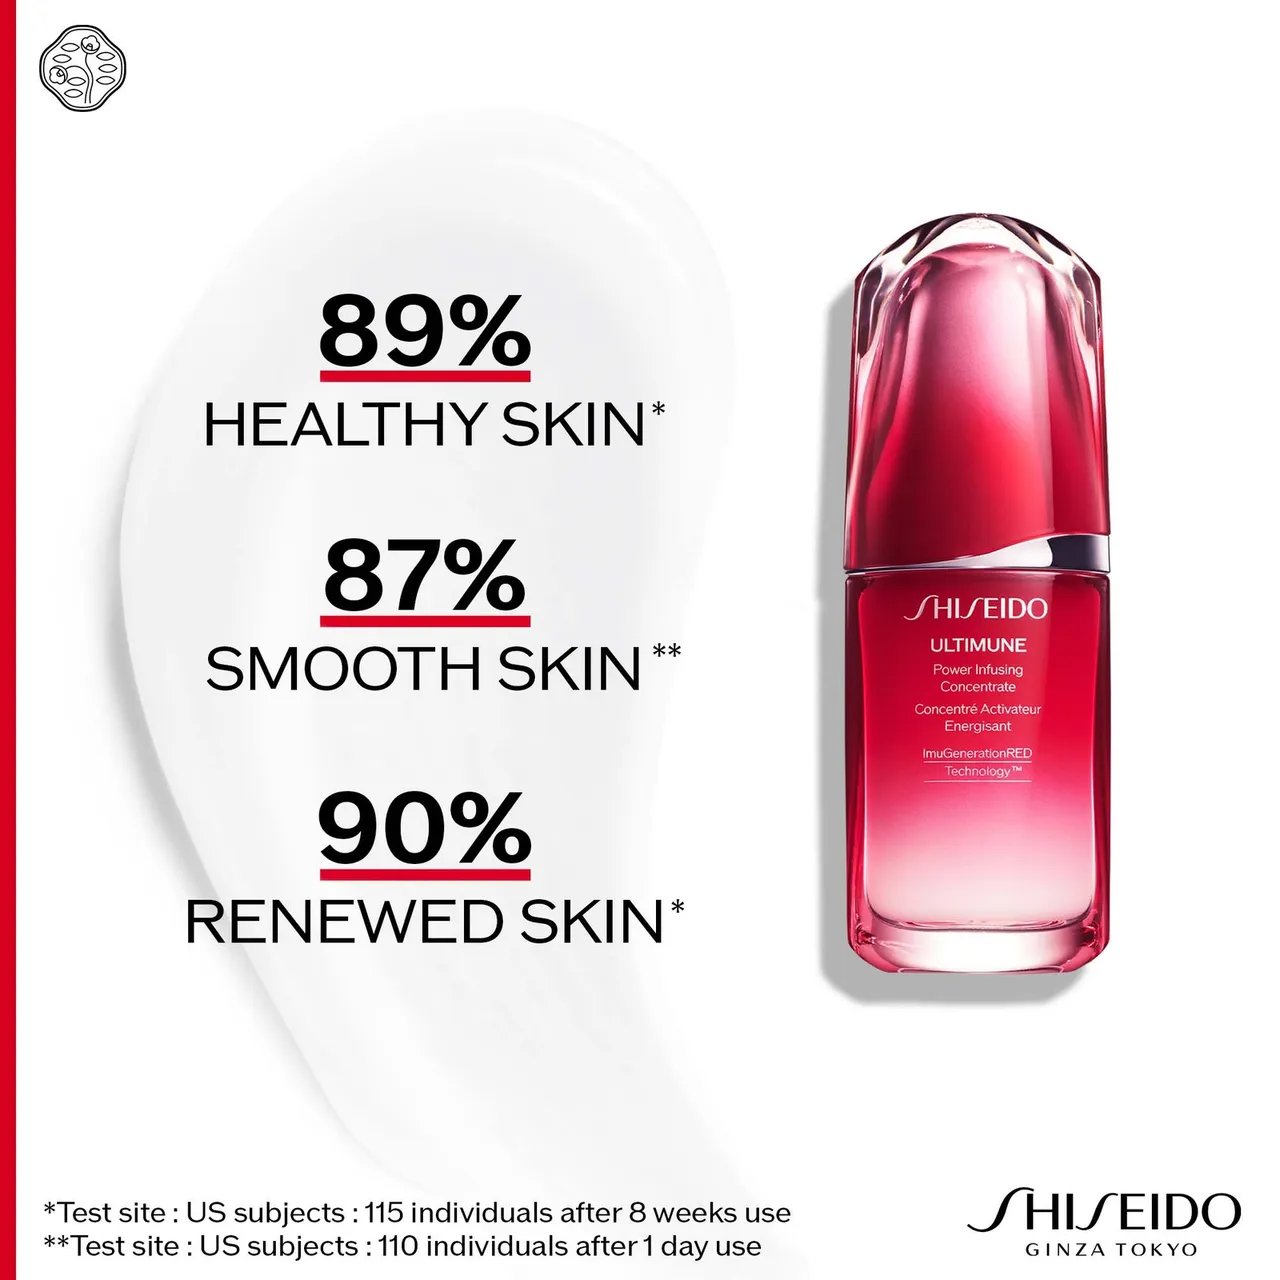 Exklusives Ultimune Power Infusing Concentrate von Shiseido (verschiedene Größen) - 15ml